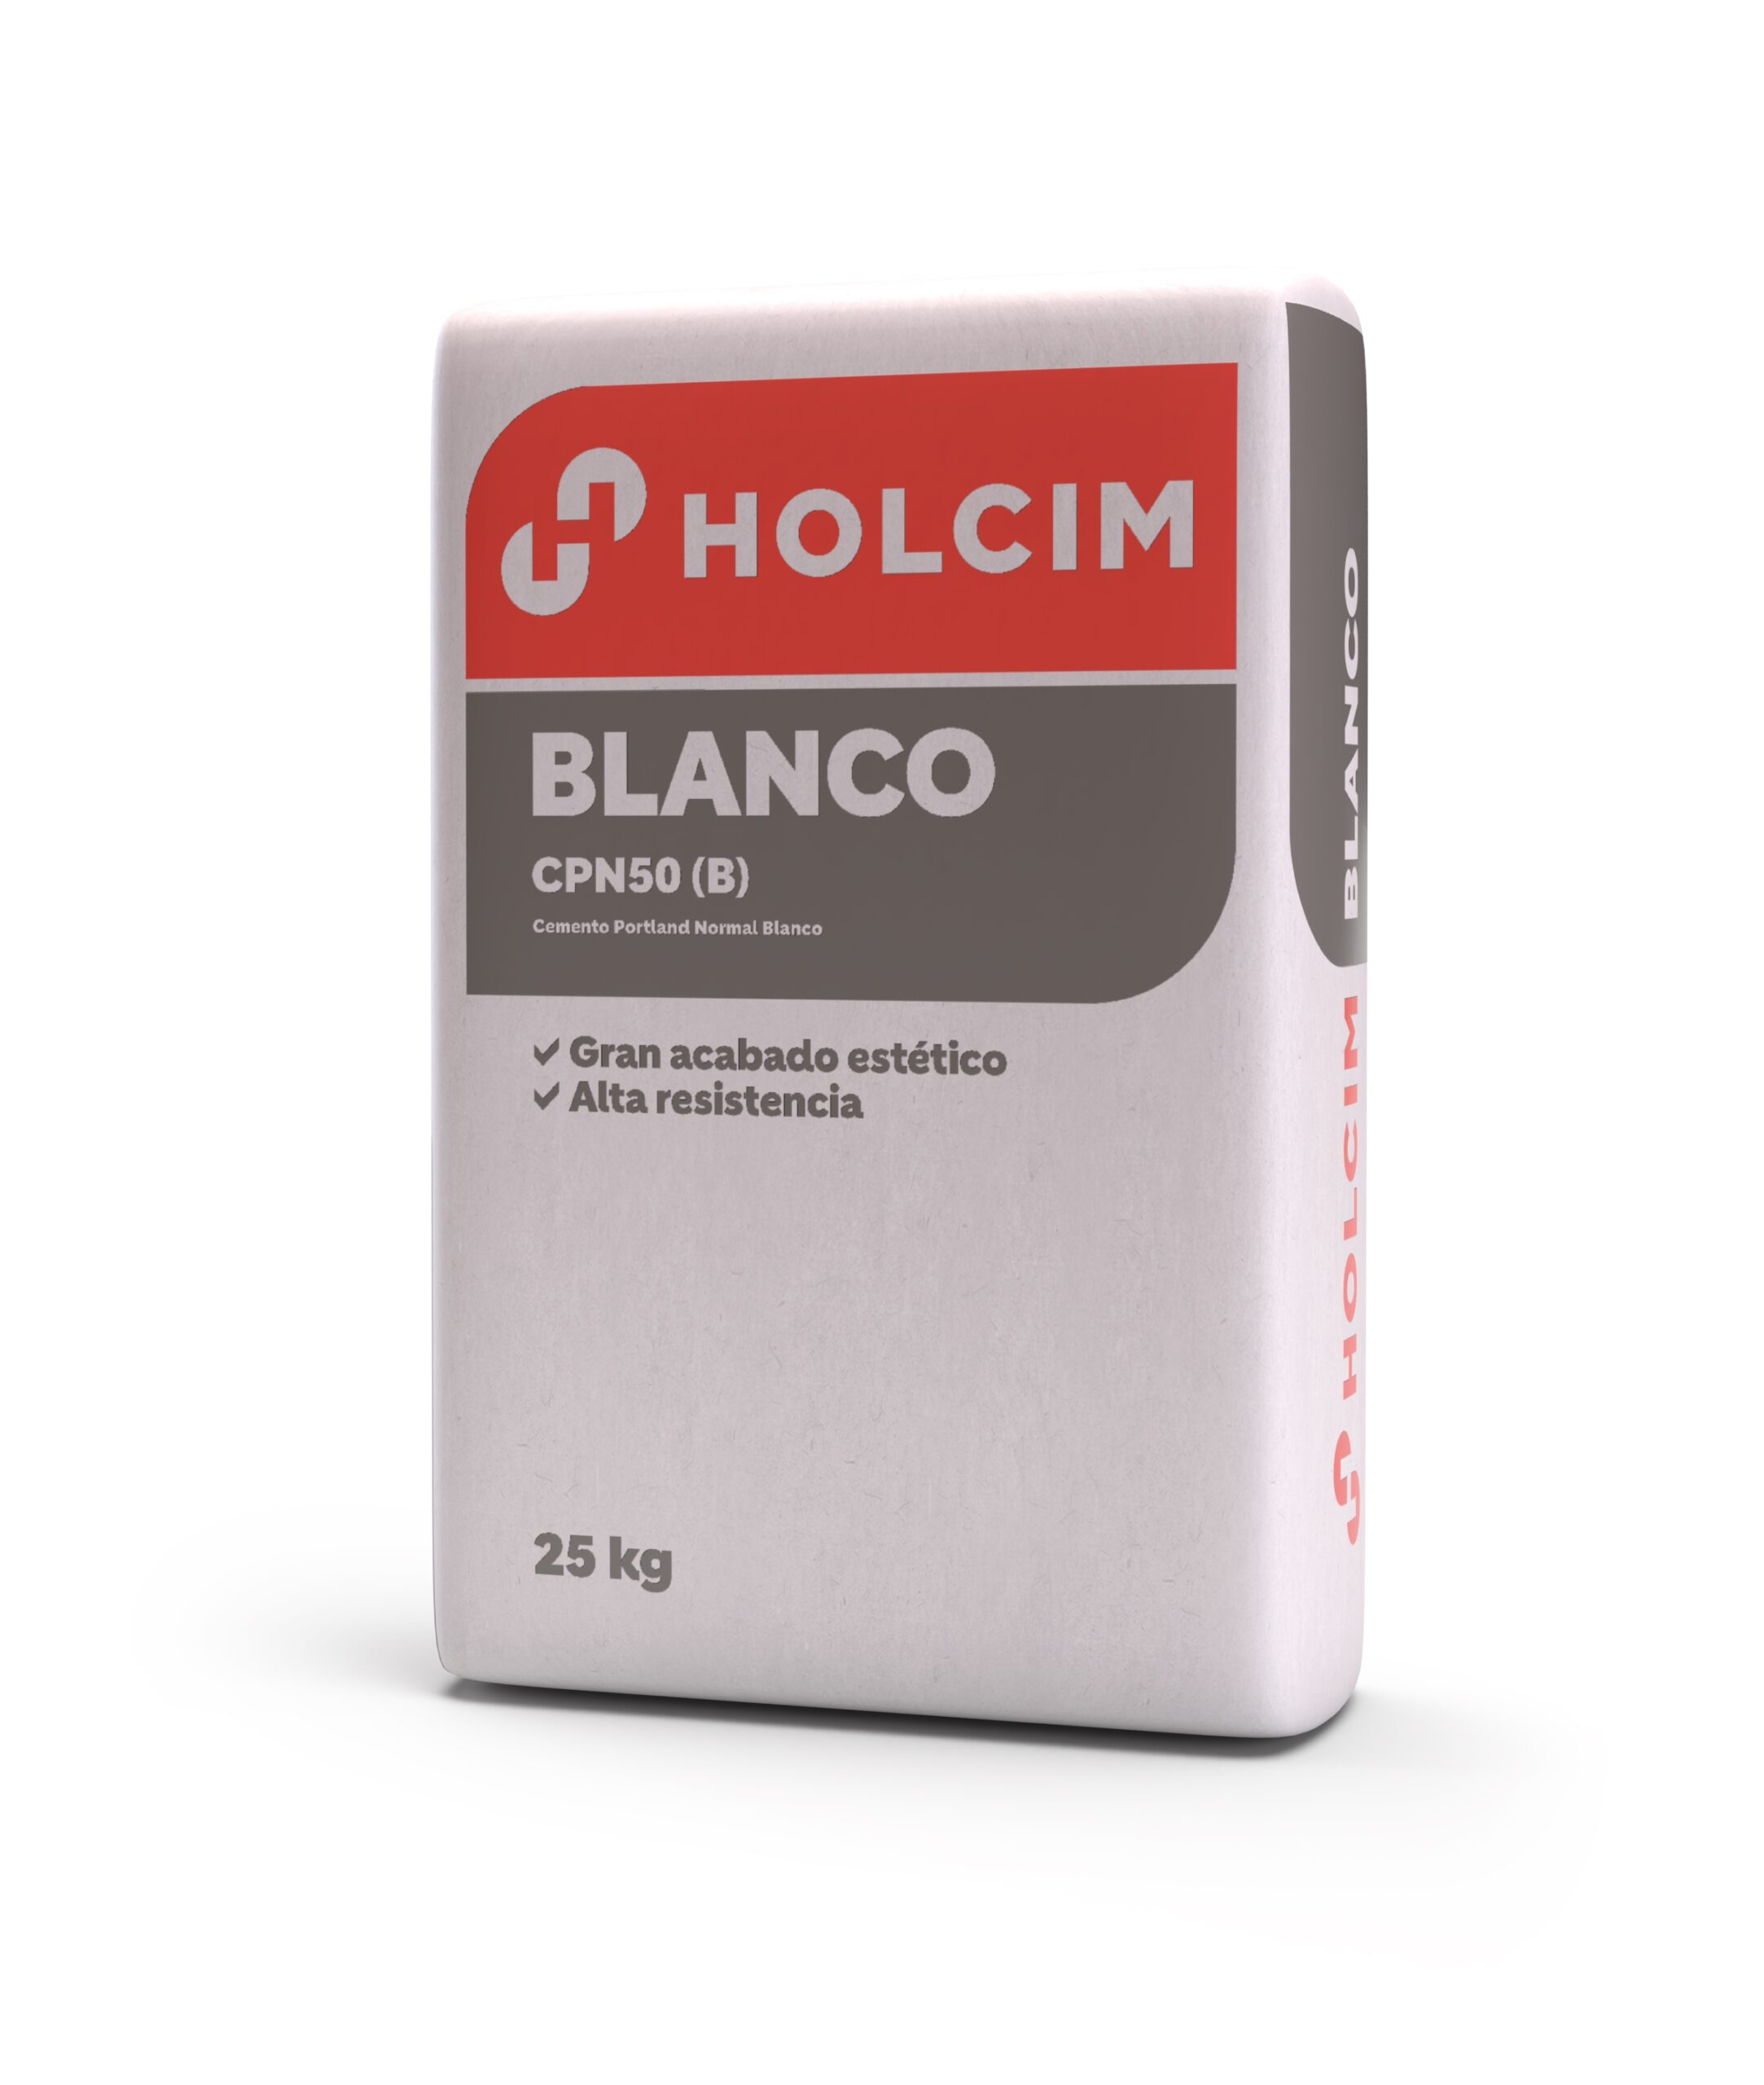 Holcim lanzó un nuevo producto: Blanco, un cemento destinado a la decoración y el arte